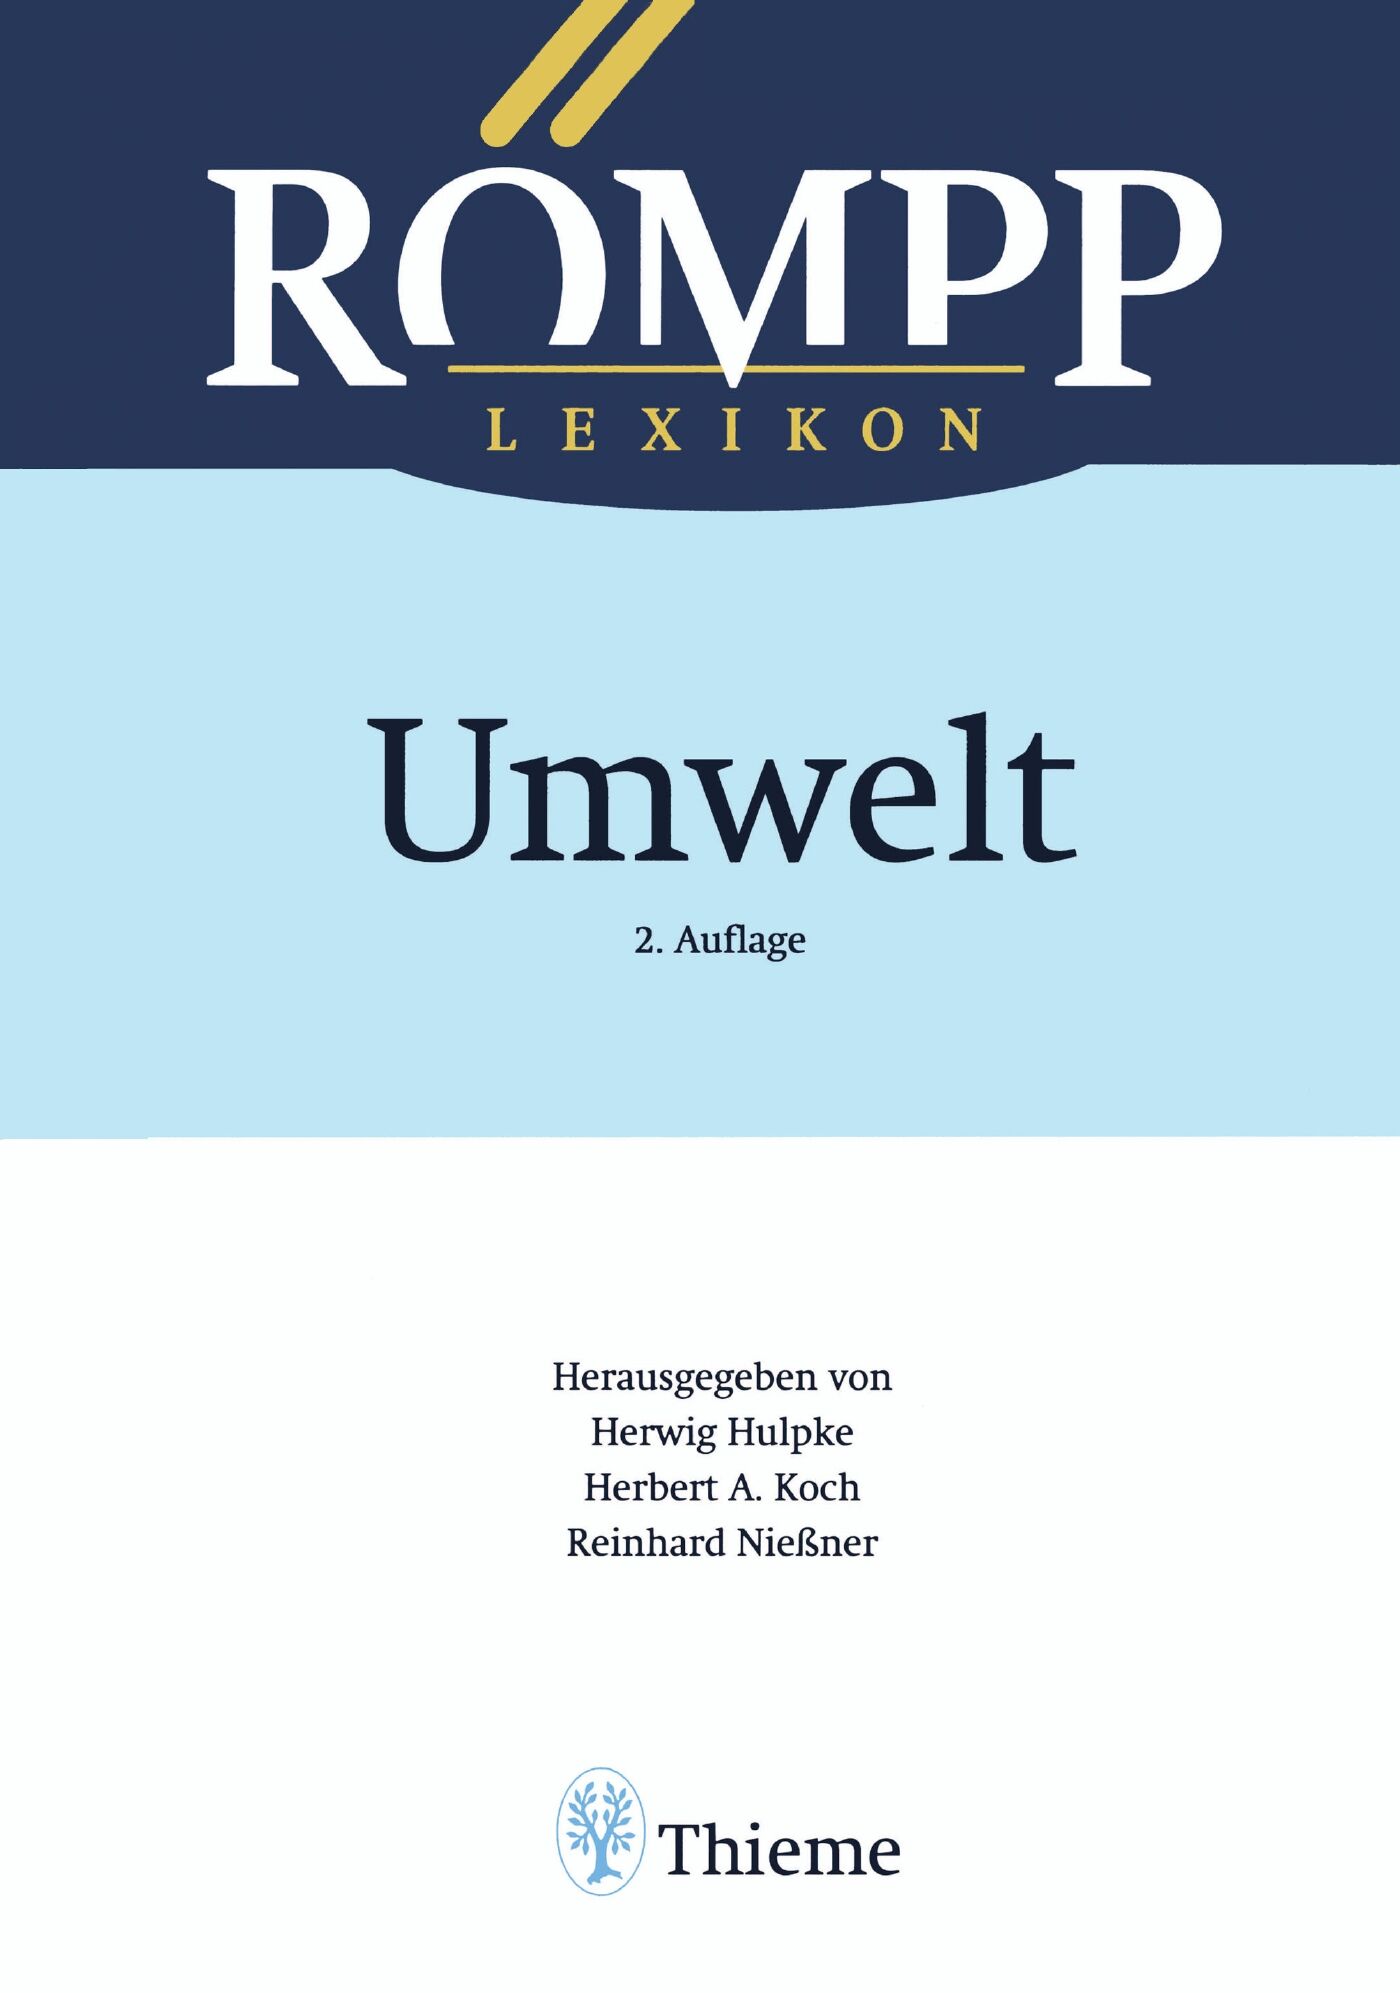 RÖMPP Lexikon Umwelt, 2. Auflage, 2000, 9783131795823